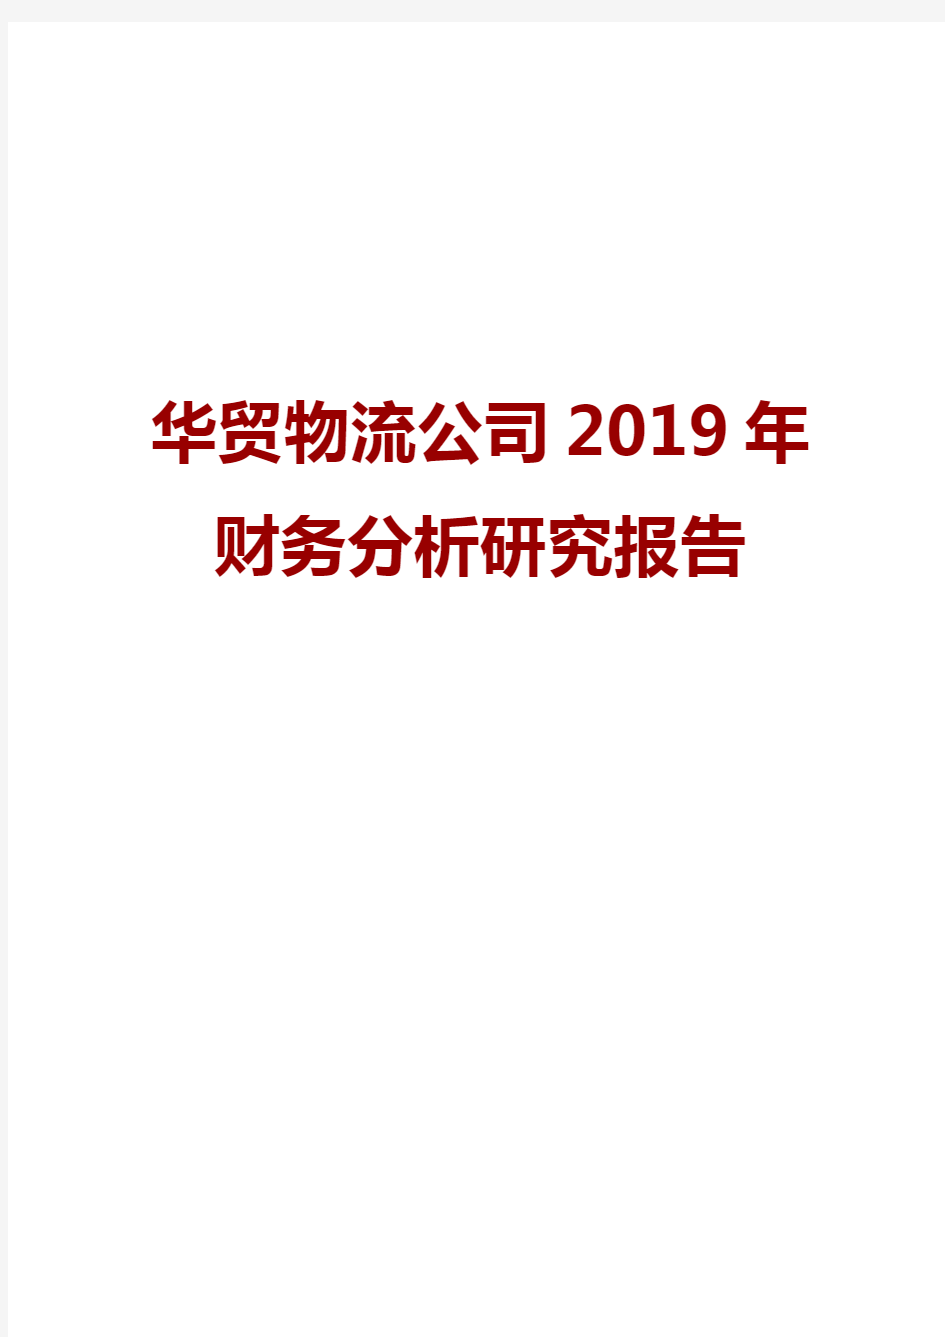 华贸物流公司2019年财务分析研究报告